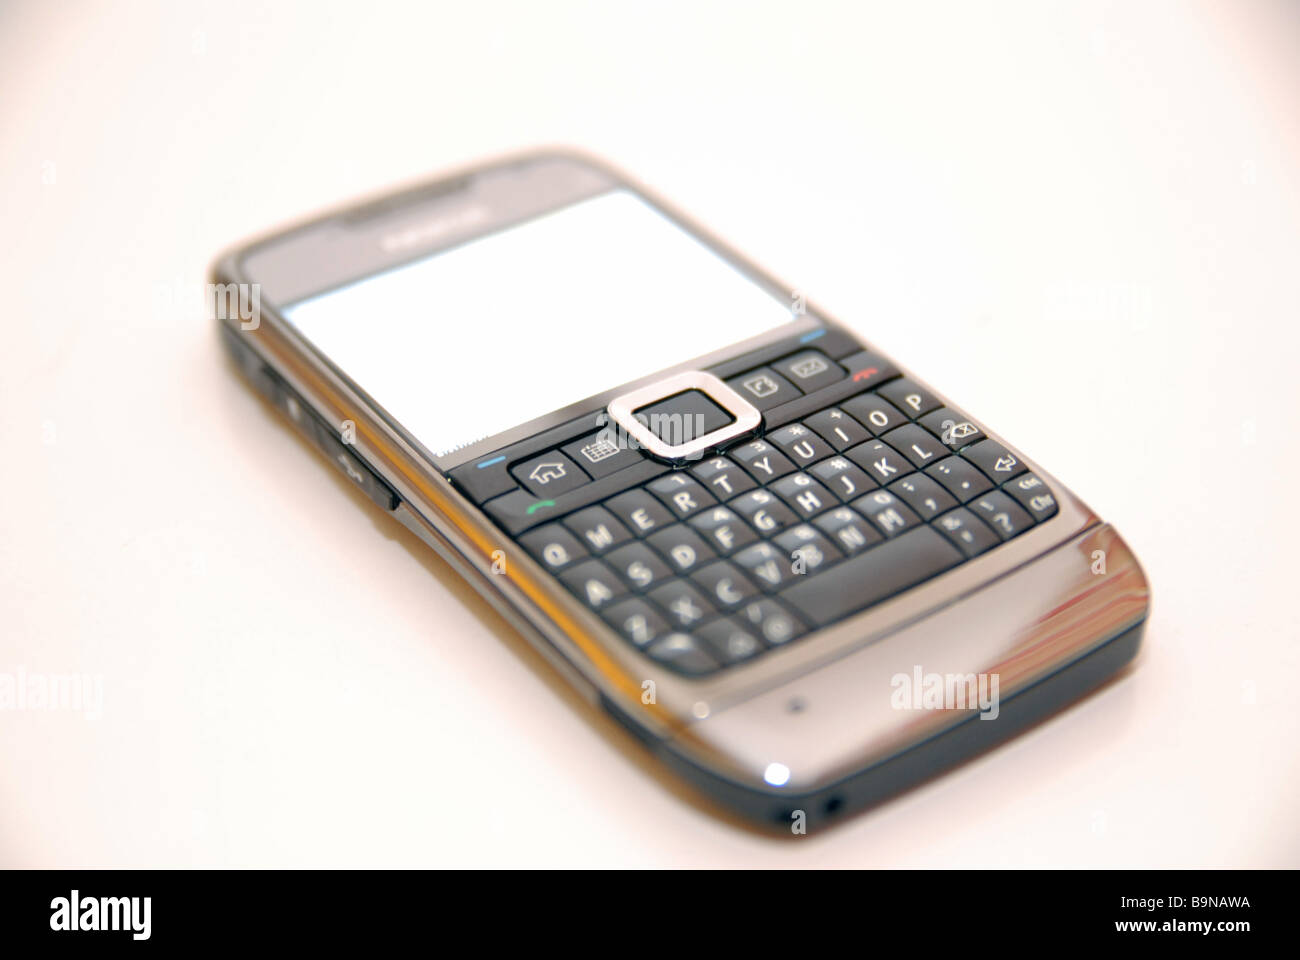 Un telefono cellulare Nokia/dispositivo con tastiera QWERTY completa Foto Stock